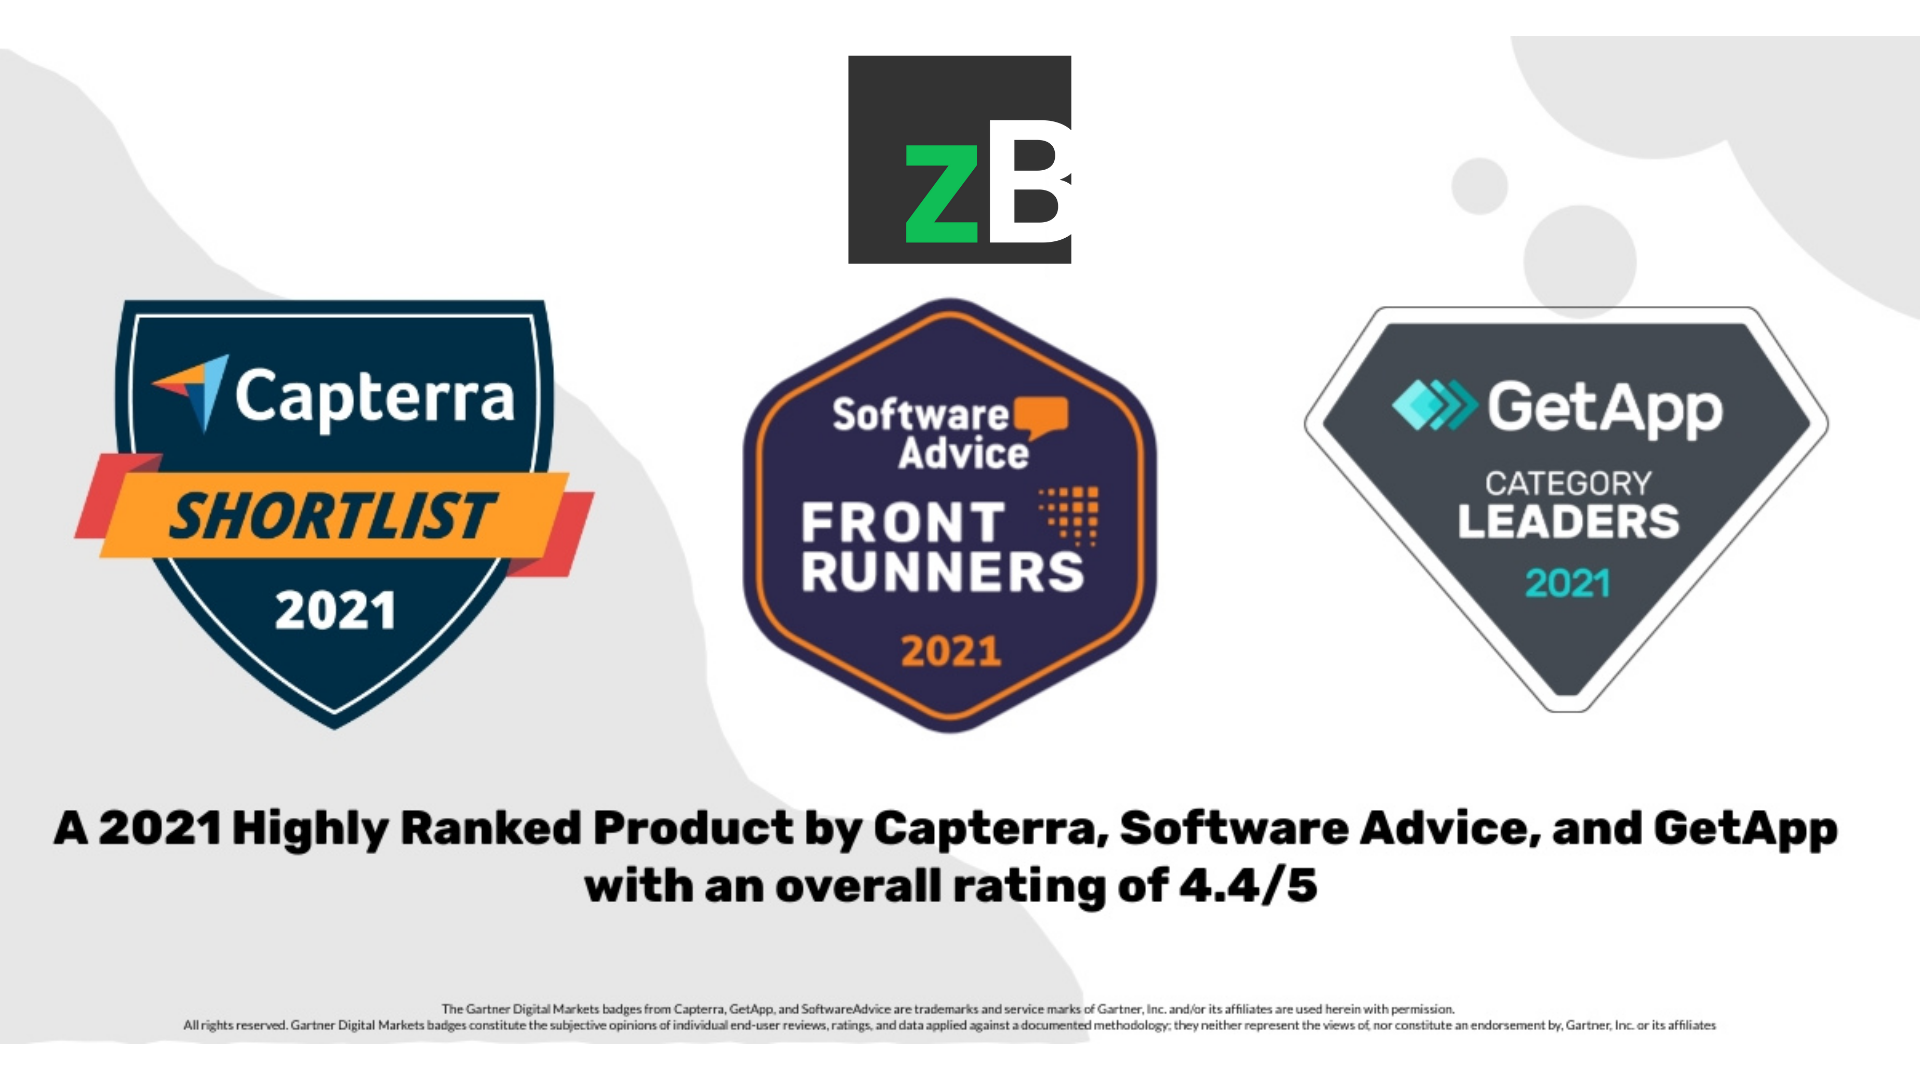 gartner digital markets recognizes zipBoard as top product 2021